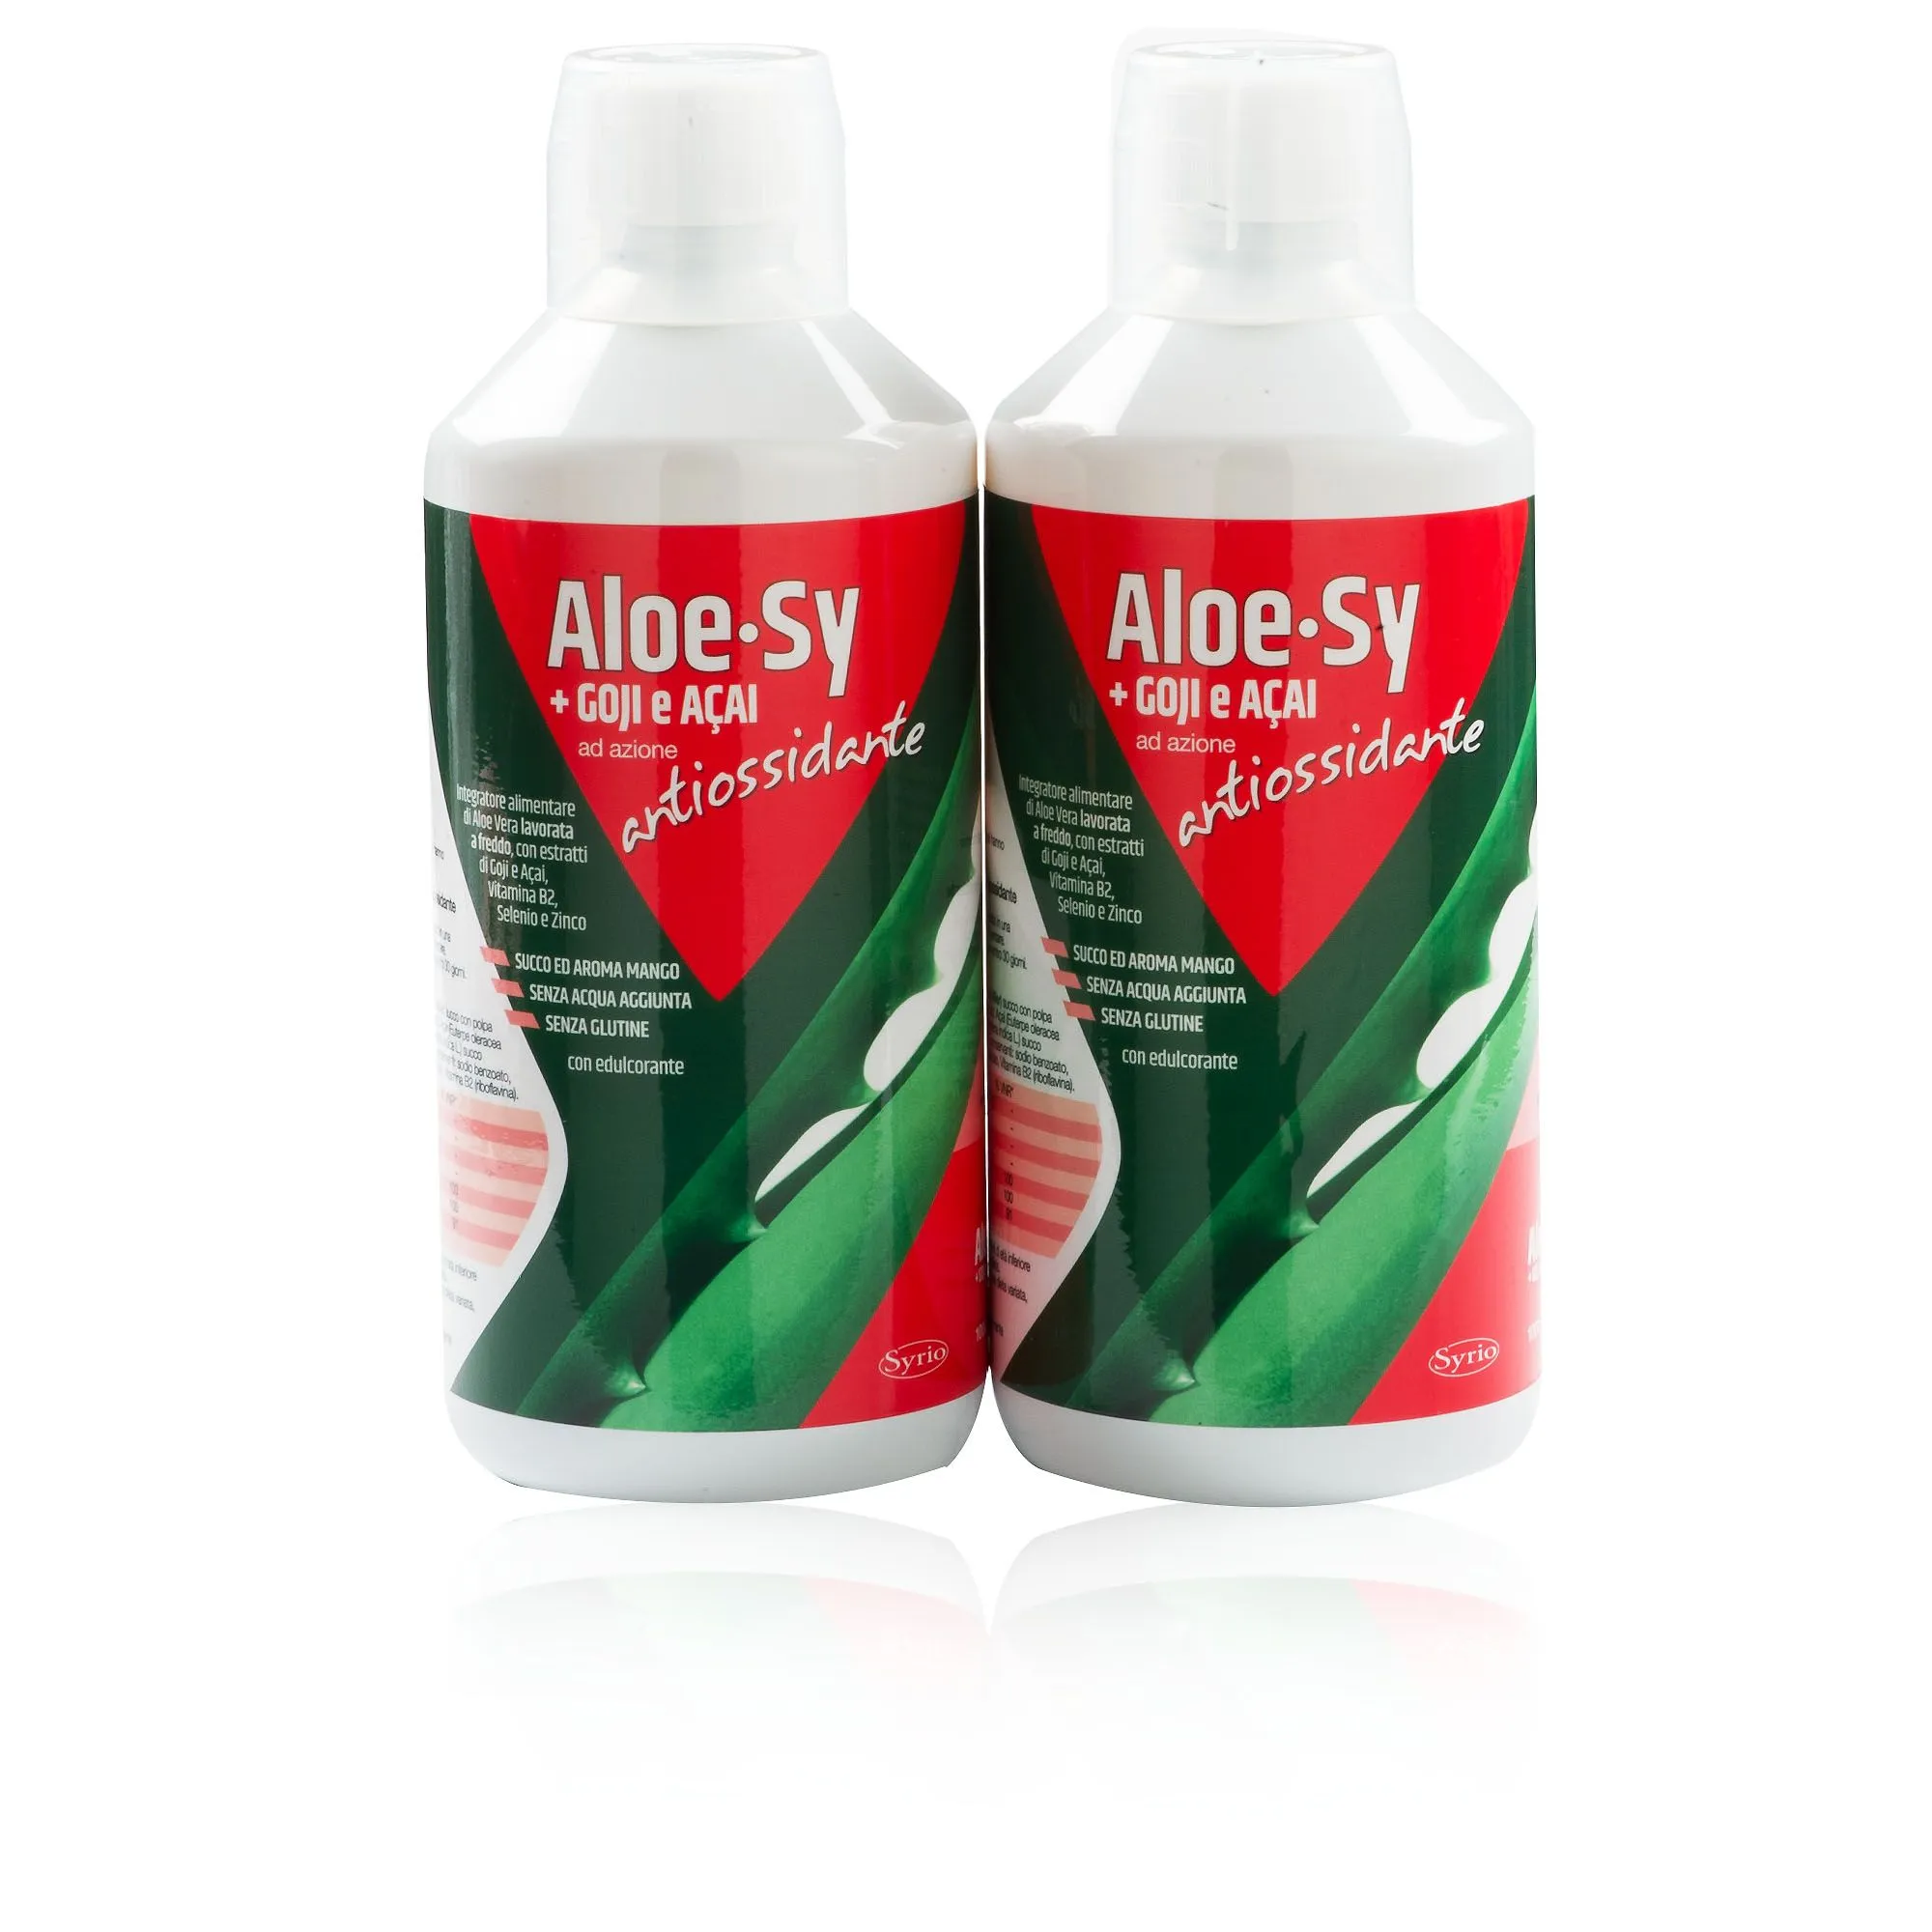 Aloe Sy con Goji e Açai, integratore alimentare (2pz)